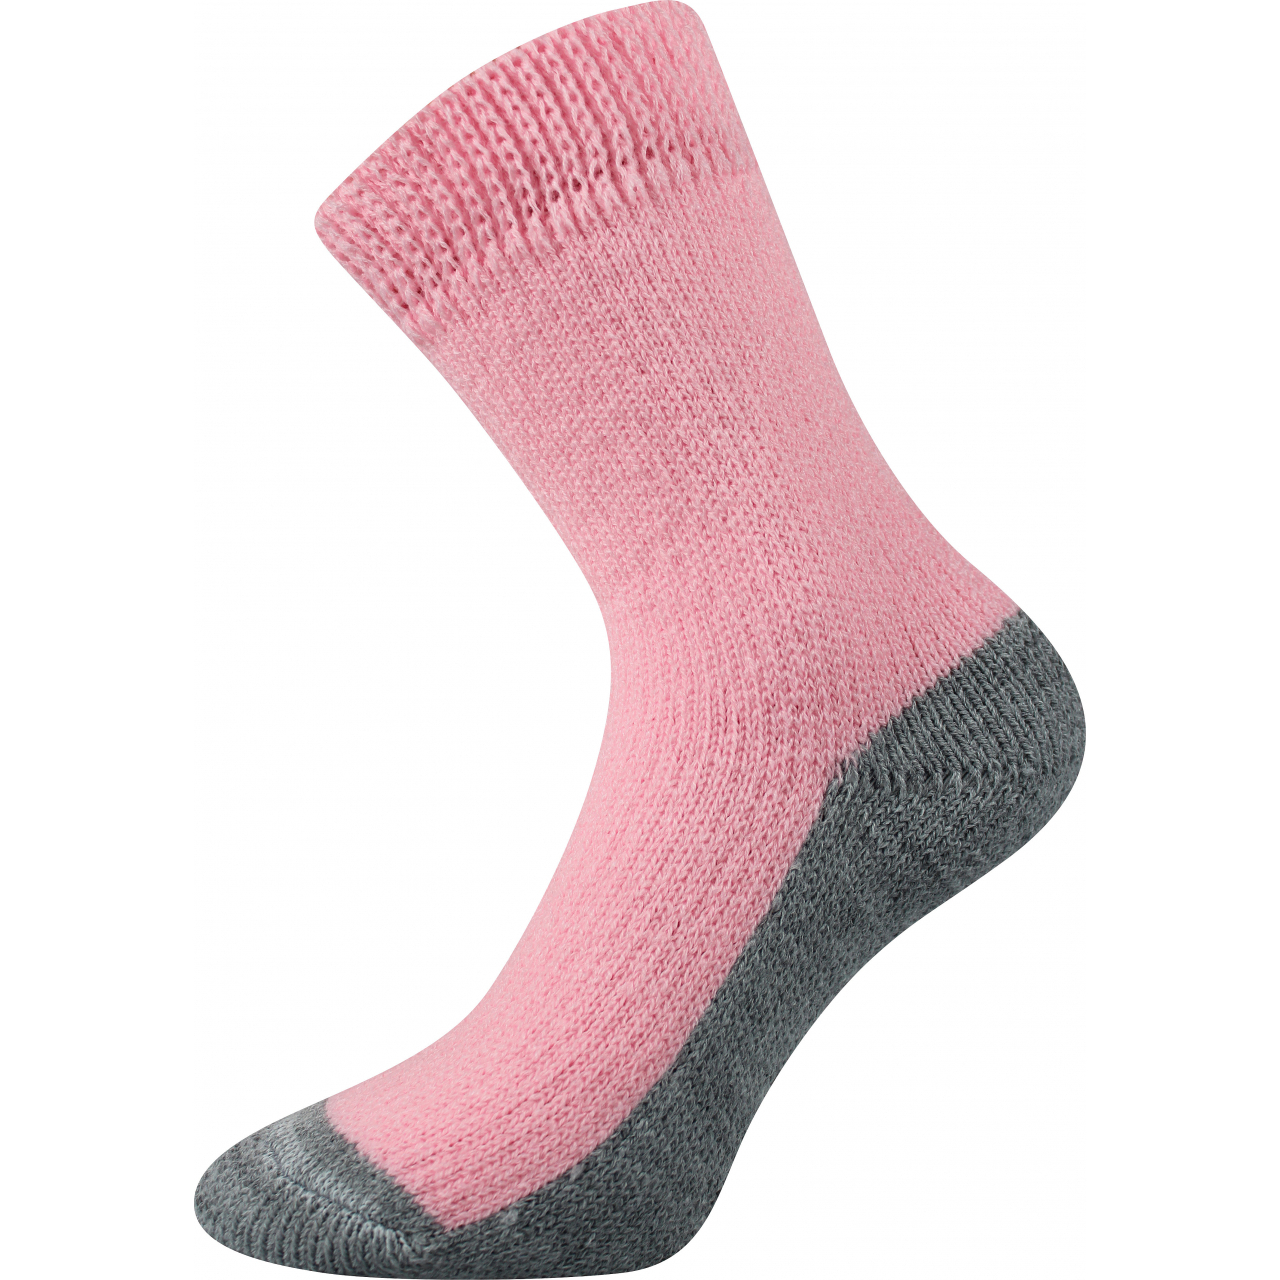 Ponožky unisex Boma Spací - světle růžové, 39-42